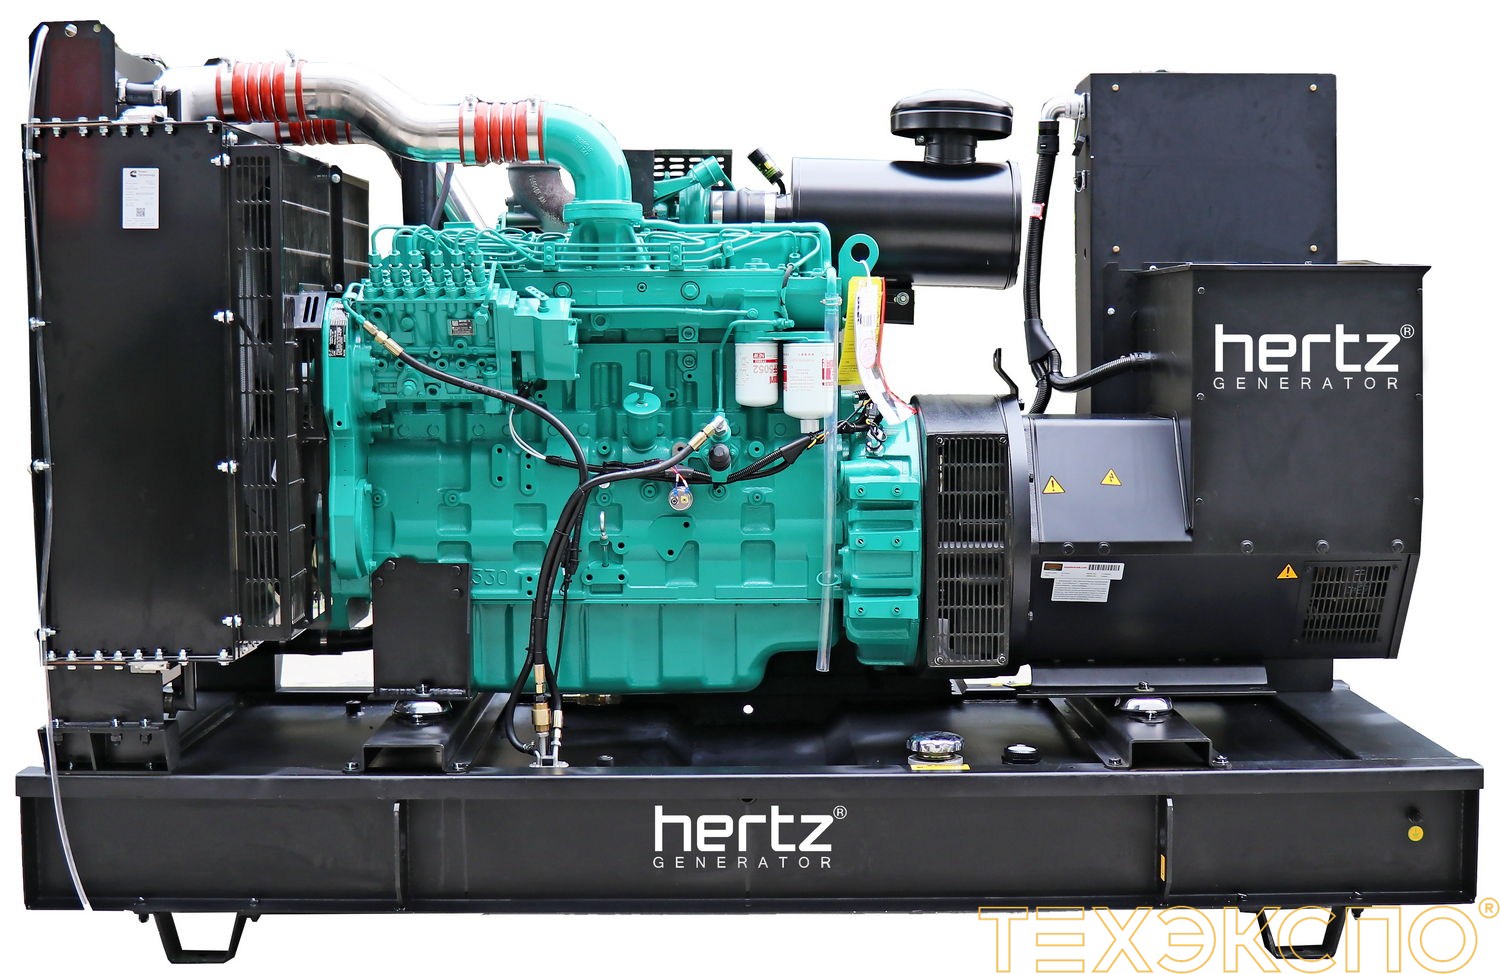 HERTZ HG550 CL - ДЭС 400 кВт в Санкт-Петербурге за 7 580 311 рублей | Дизельная электростанция в Техэкспо